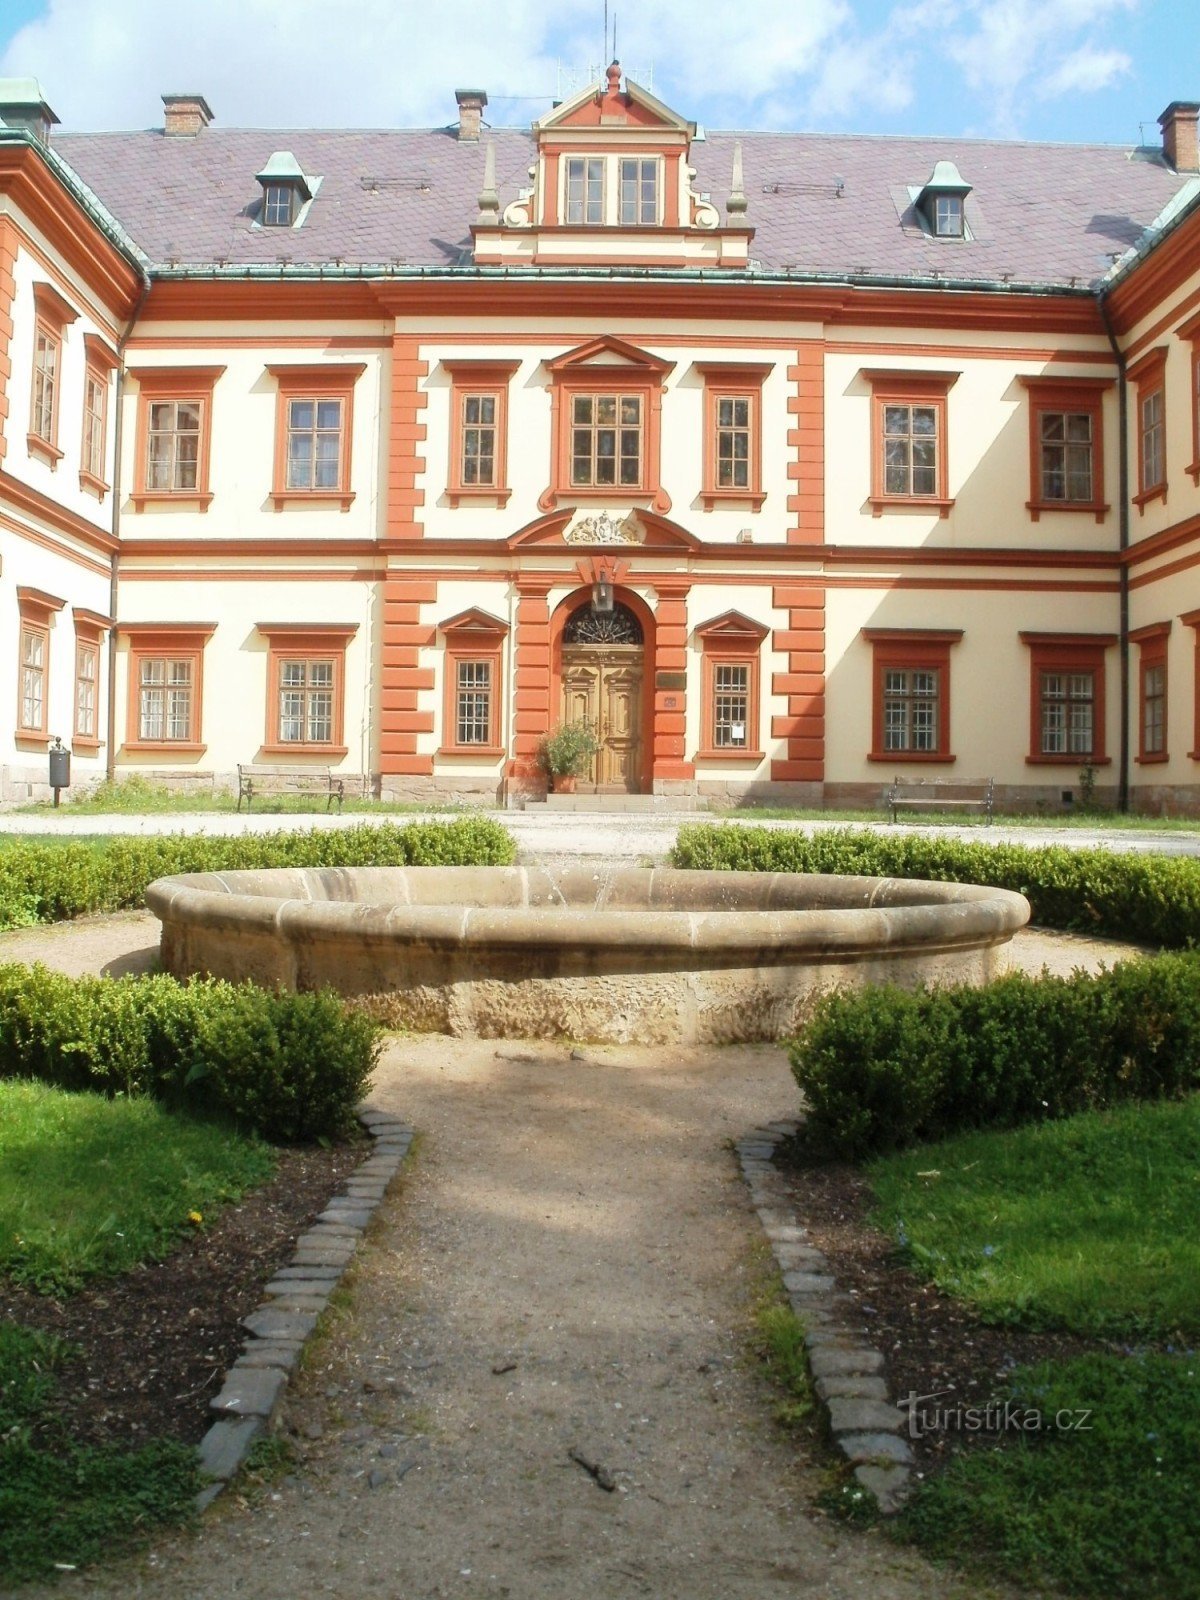 Йилемнице - музей Крконоше, замок